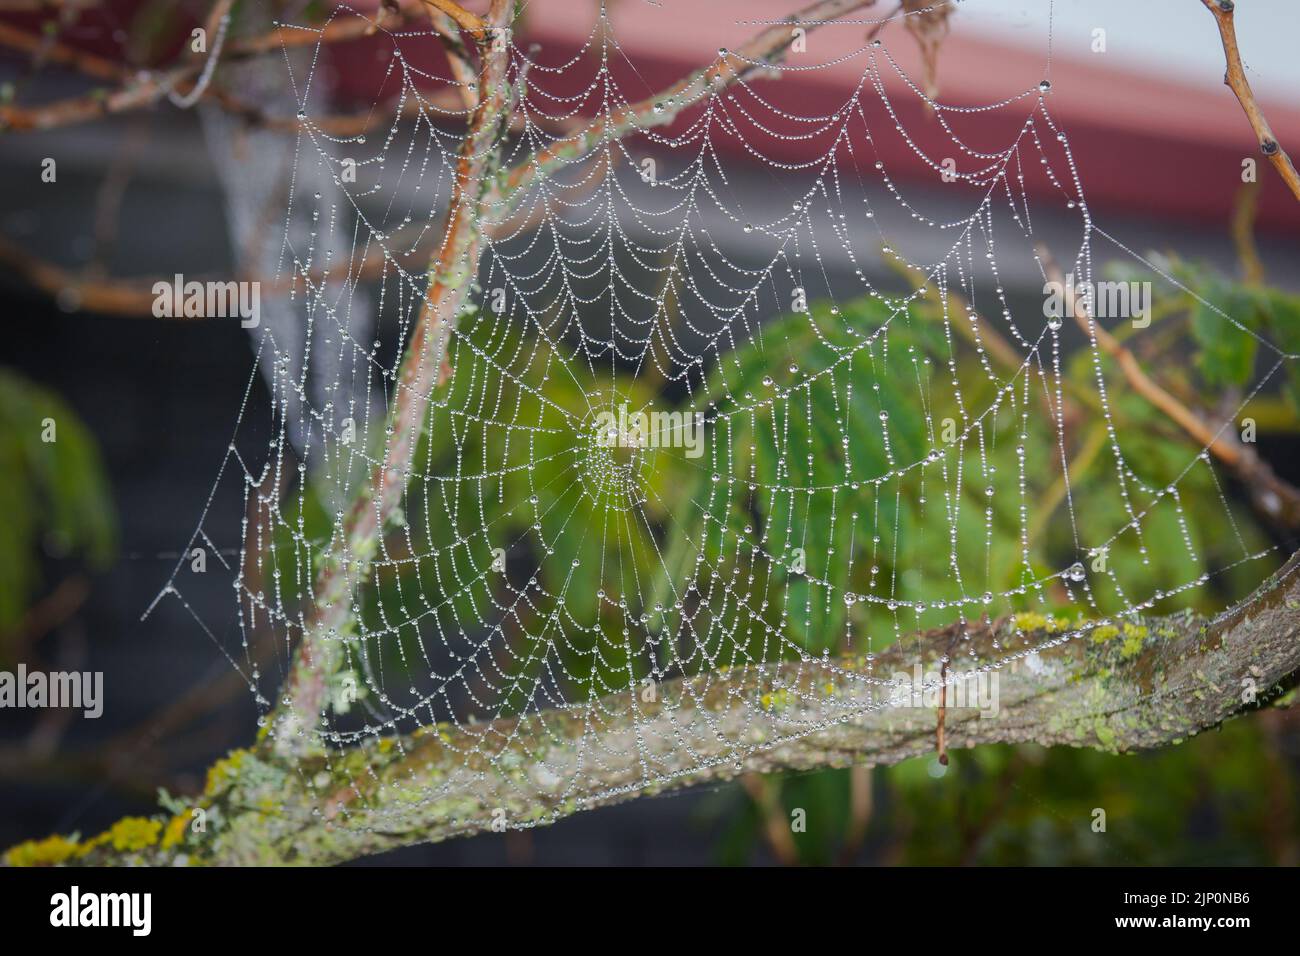 Uno sguardo alla vita in Nuova Zelanda: Una passeggiata intorno al mio giardino biologico e commestibile. Spider Web che cattura gocce di rugiada. Foto Stock